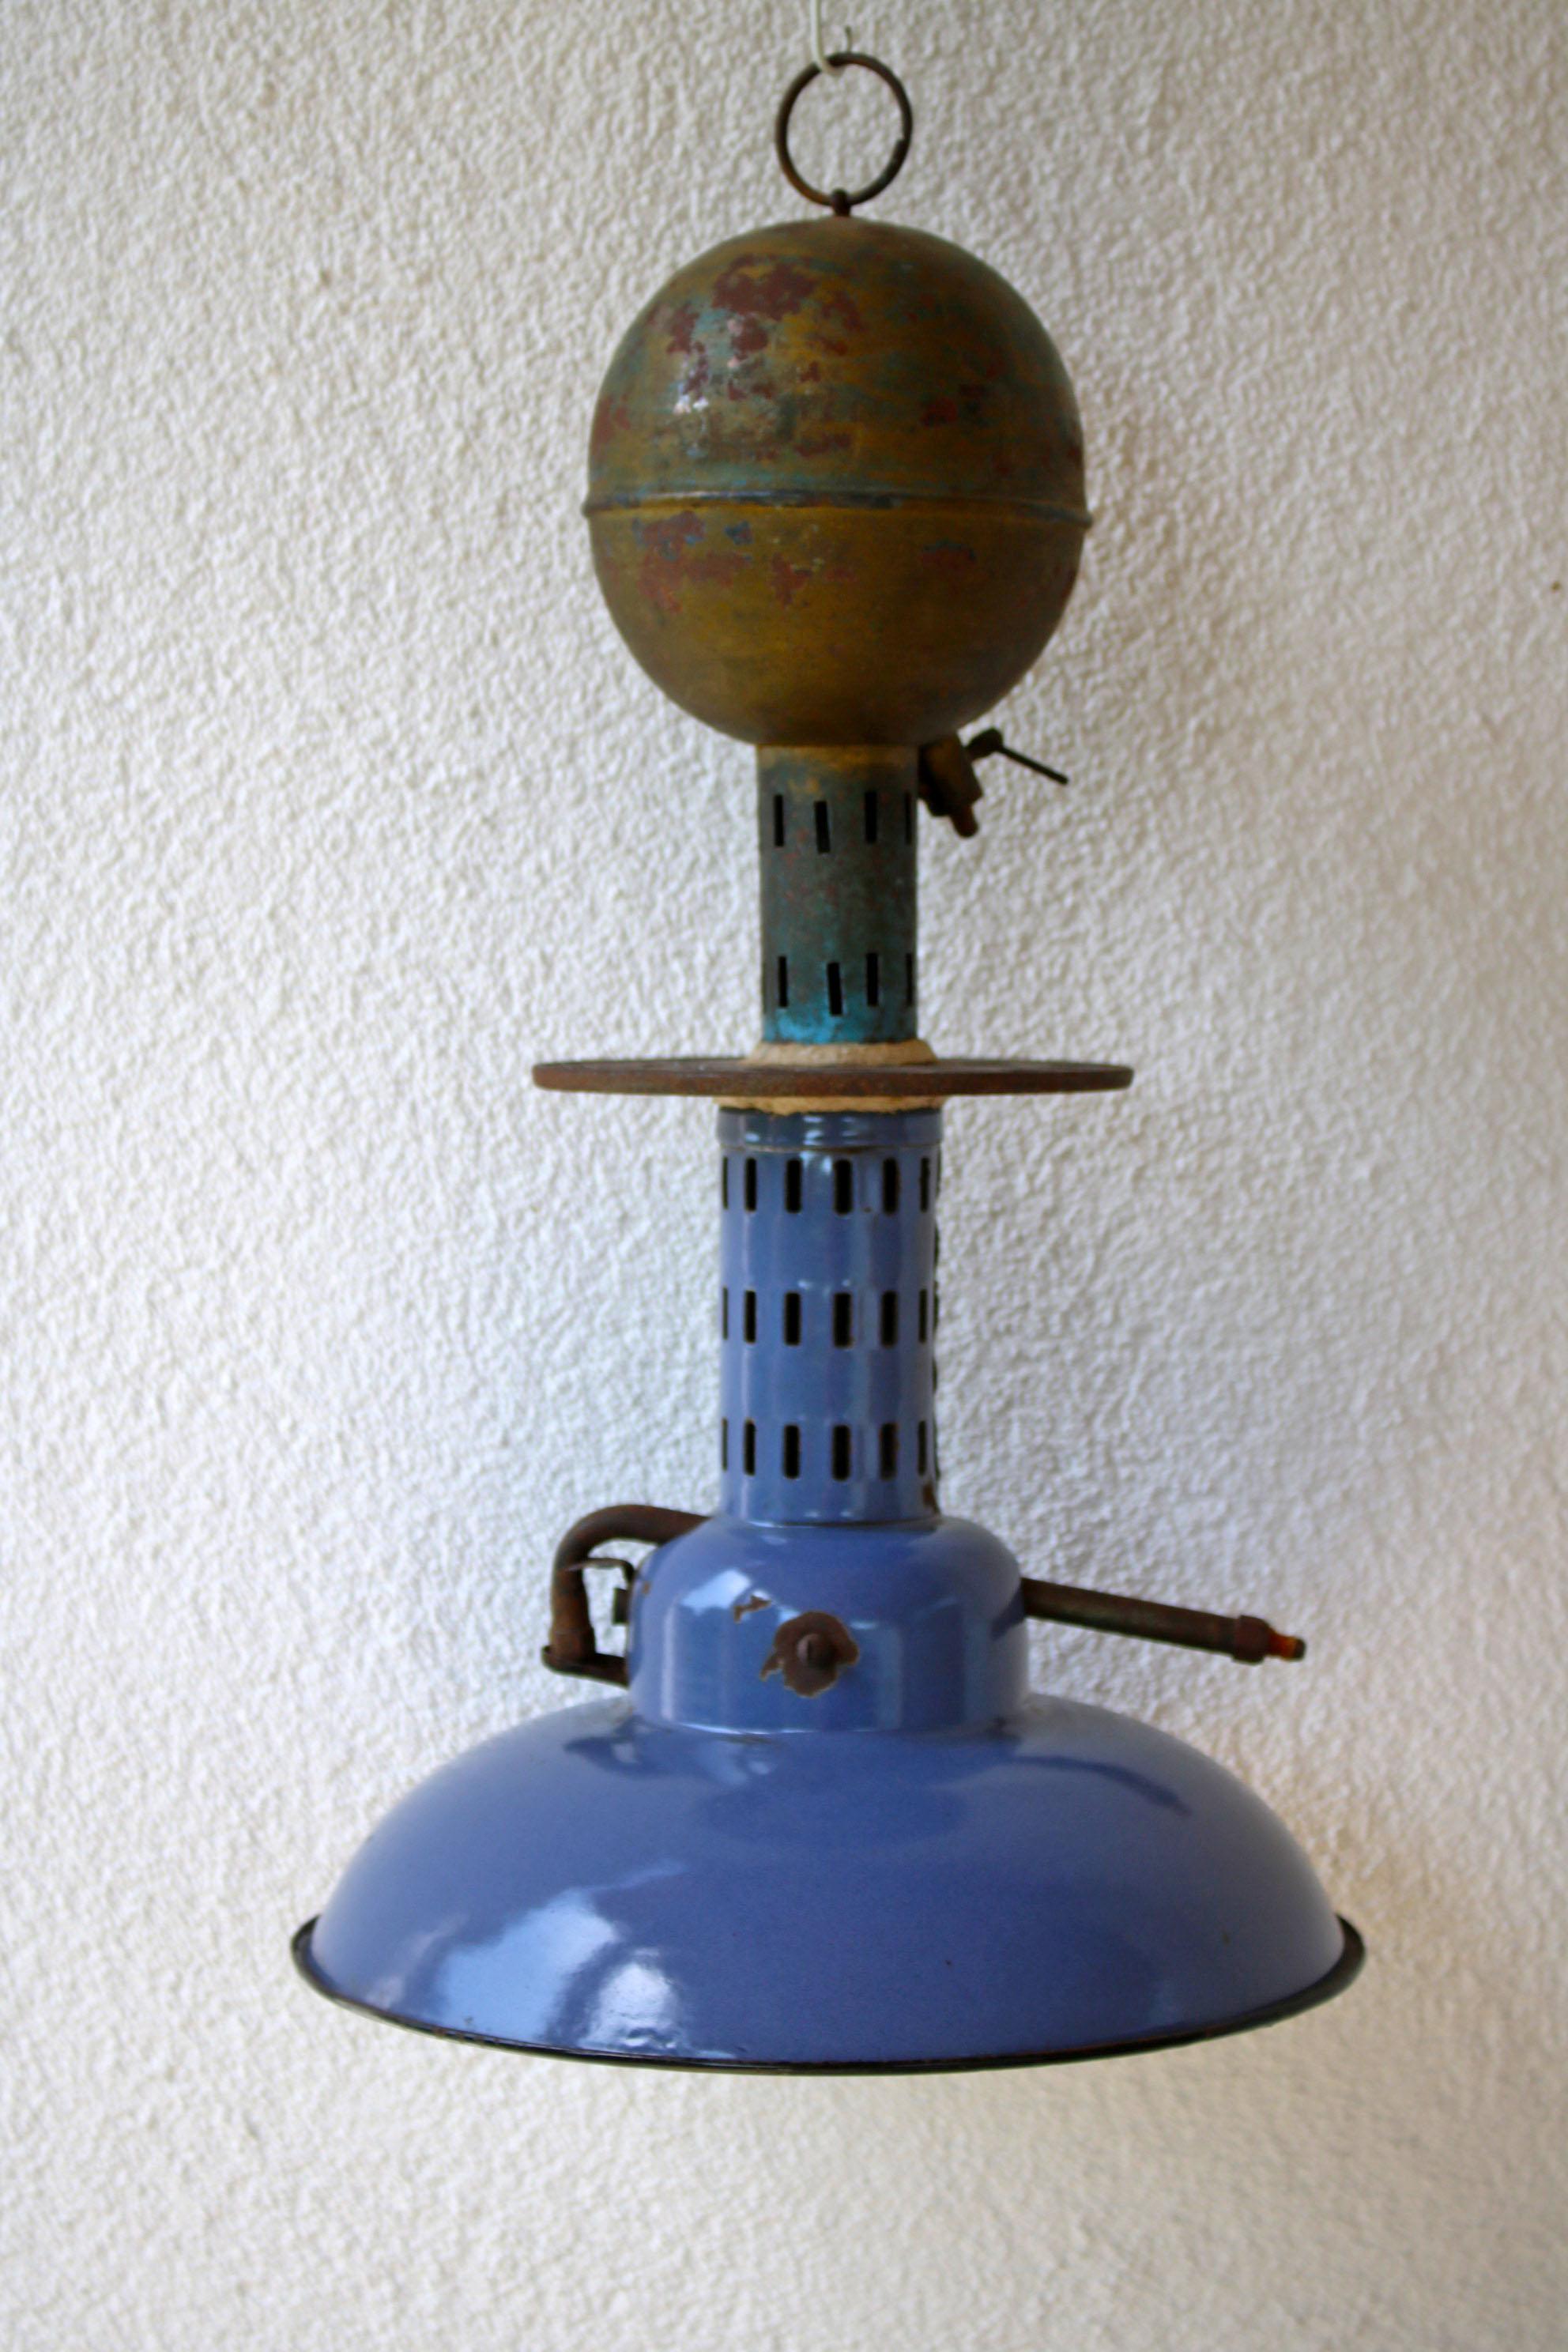 Il s'agit d'une belle lampe suspendue de la fin du 19e siècle, avant l'invention de l'électricité, qui utilise un combustible liquide. L'abat-jour est magnifiquement émaillé - la lampe est dans son état d'origine.